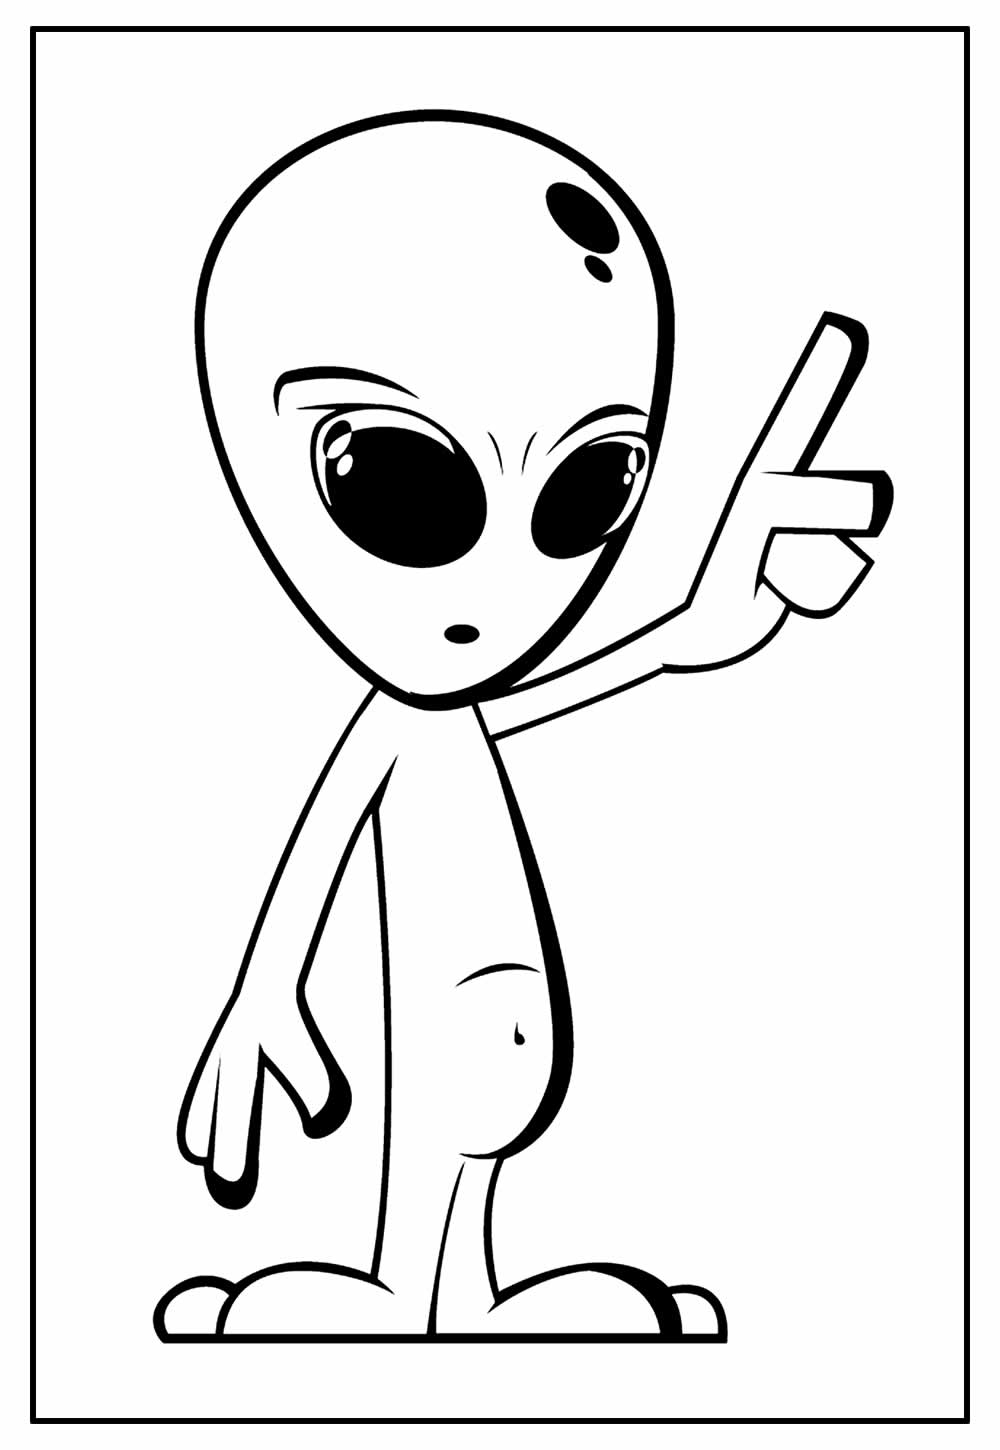 Página para colorir com ufo alien imagem vetorial de Sybirko